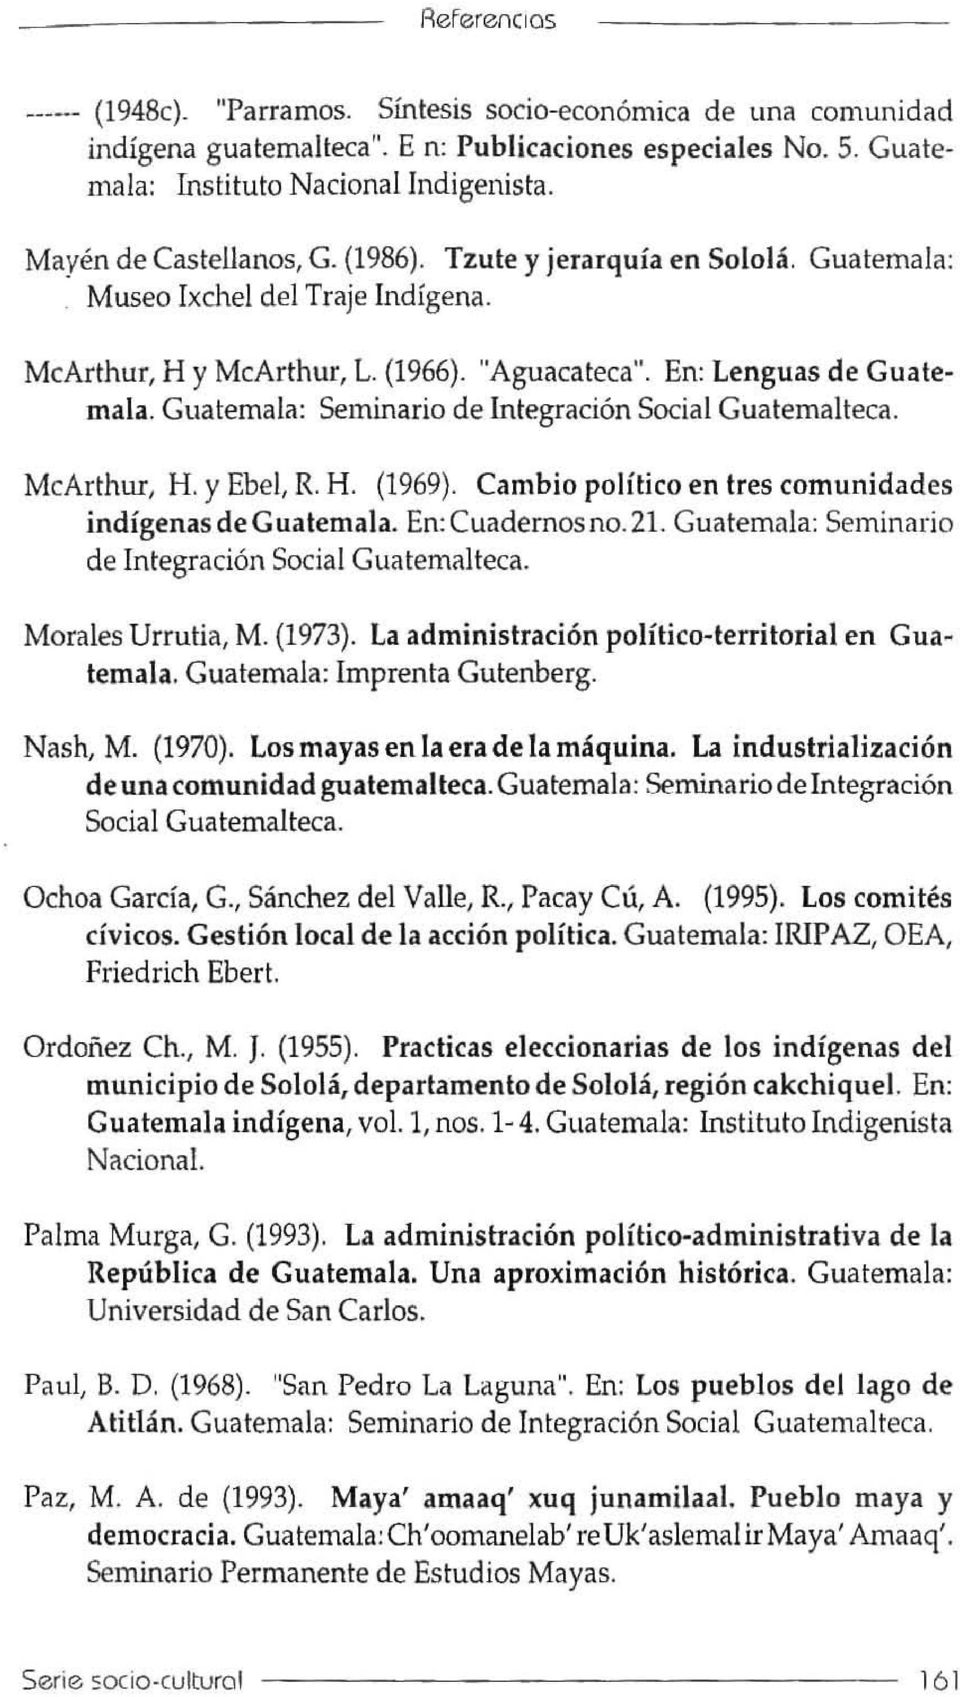 Glialemala: Seminario de Inlegracion Social Gualemalteca, McArthur, H, Y Ebel, R H, (1969). Cambia politico en Ires comunidades indigenas de Guatemala.